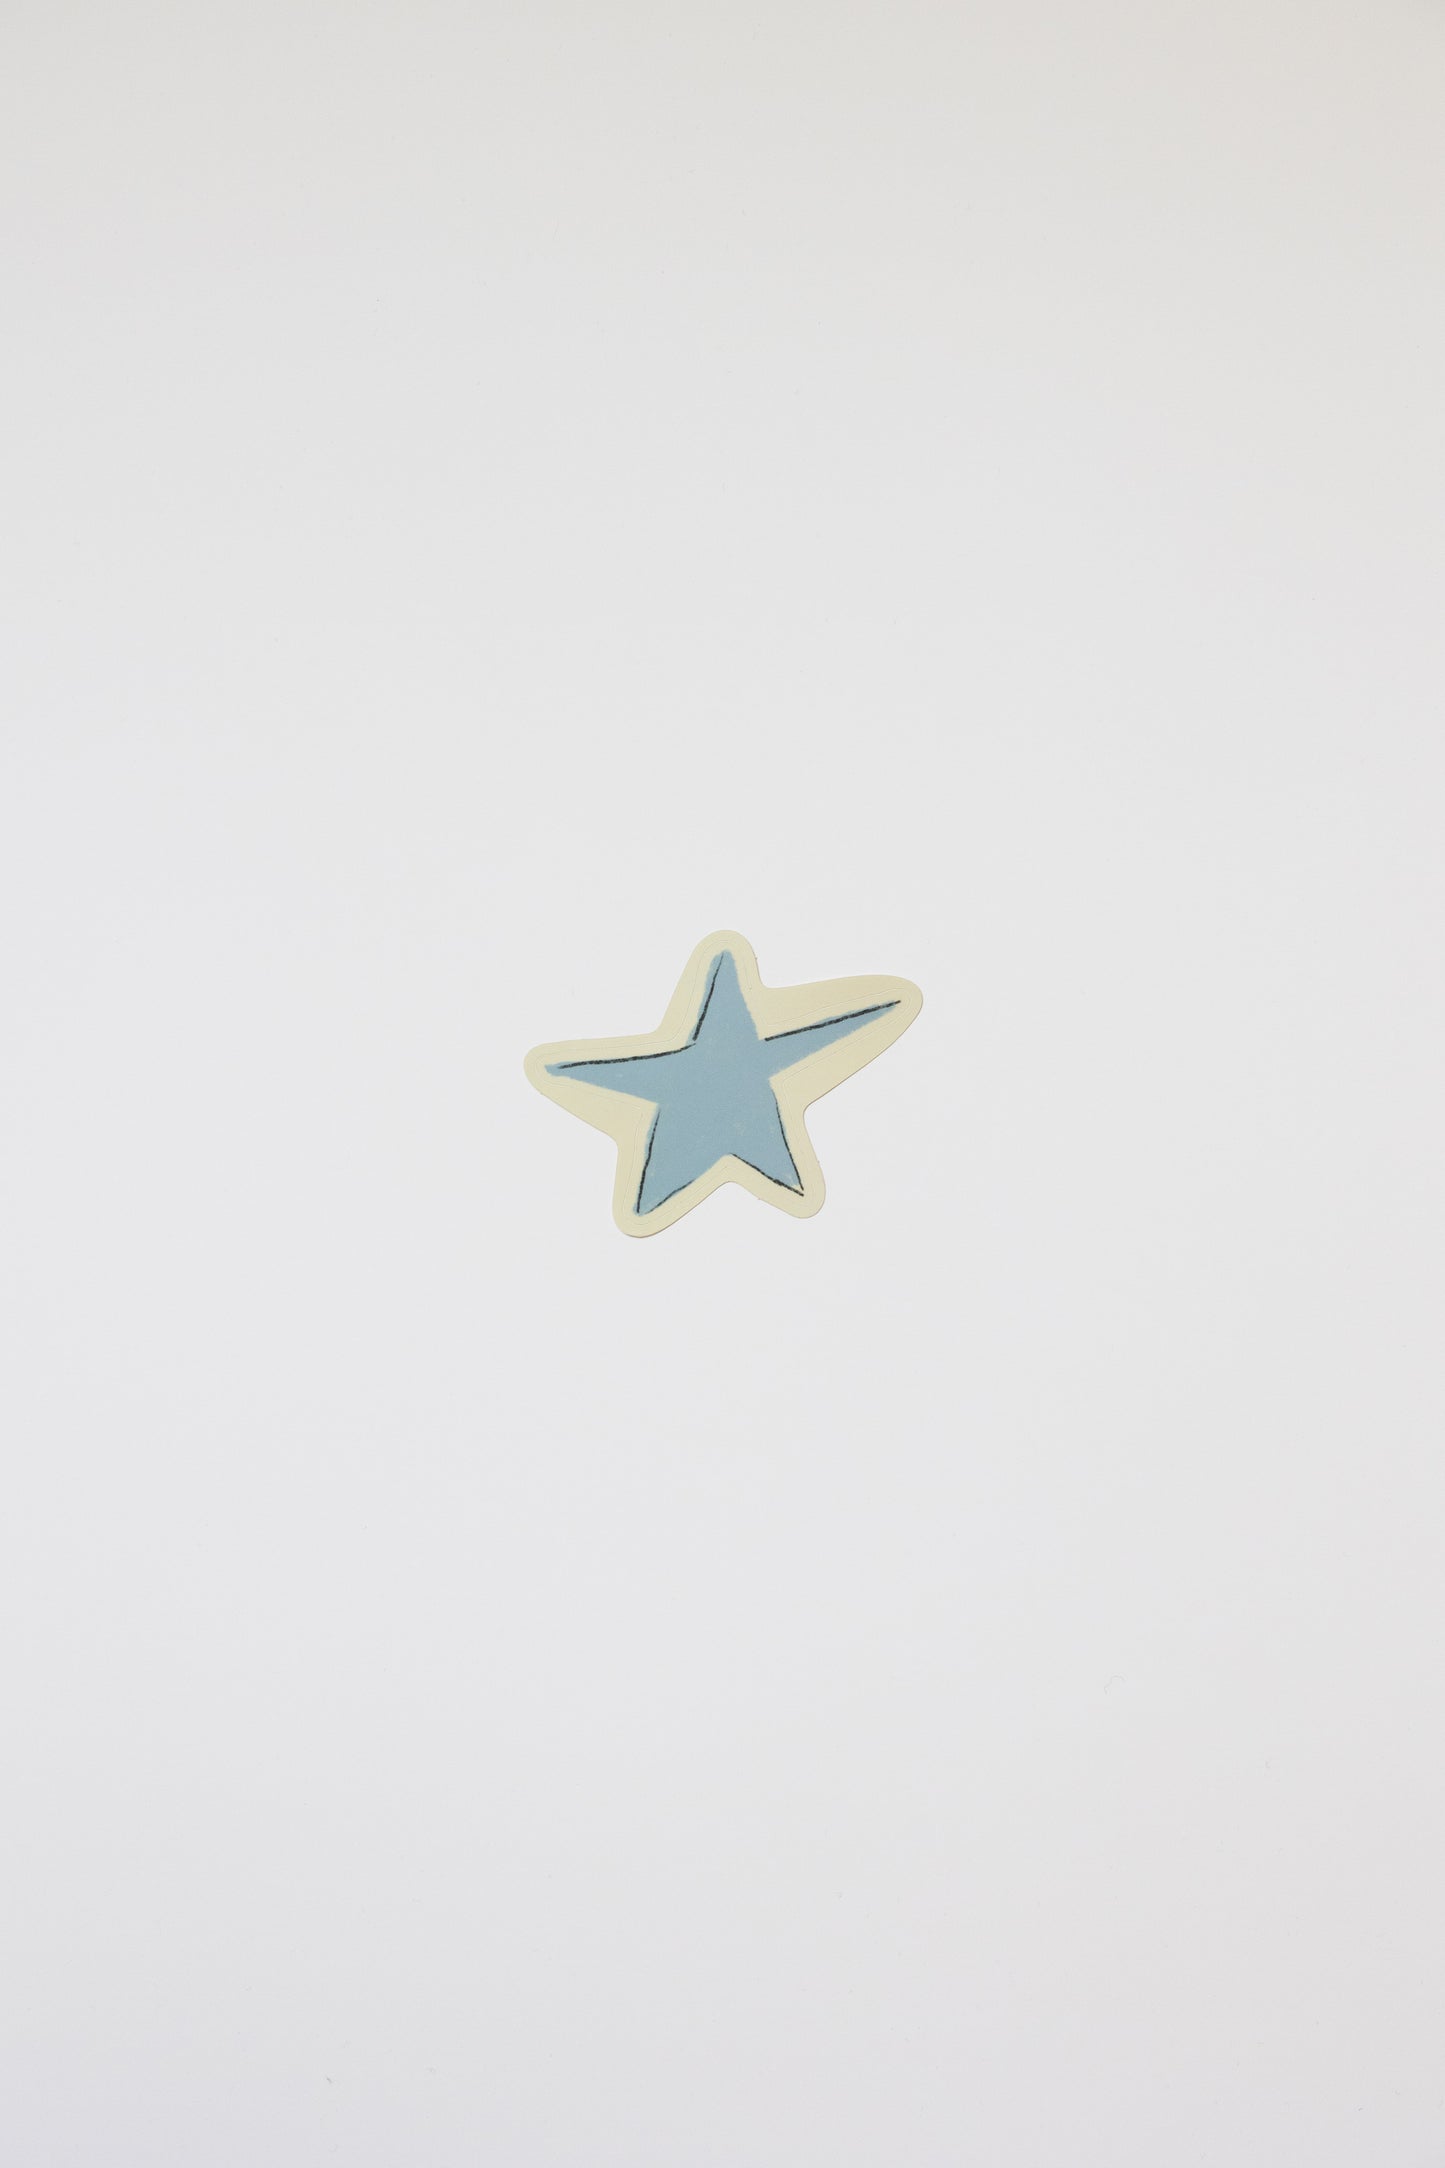 Blue Star Sticker